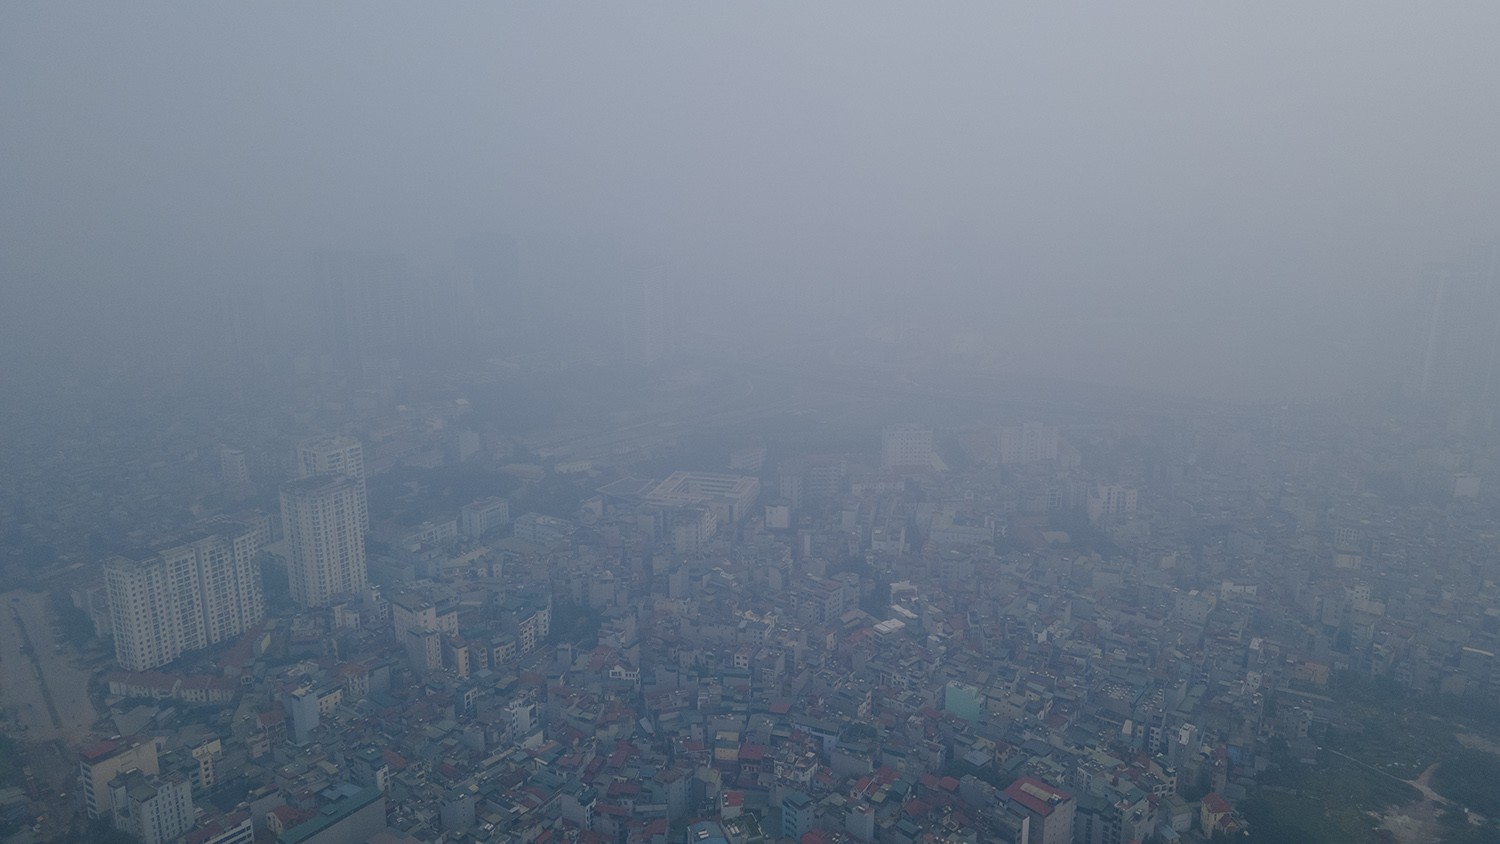 Trung tâm Hà Nội chìm trong sương mù dày đặc, chất lượng không khí nhiều nơi ở “mức đỏ” - 2